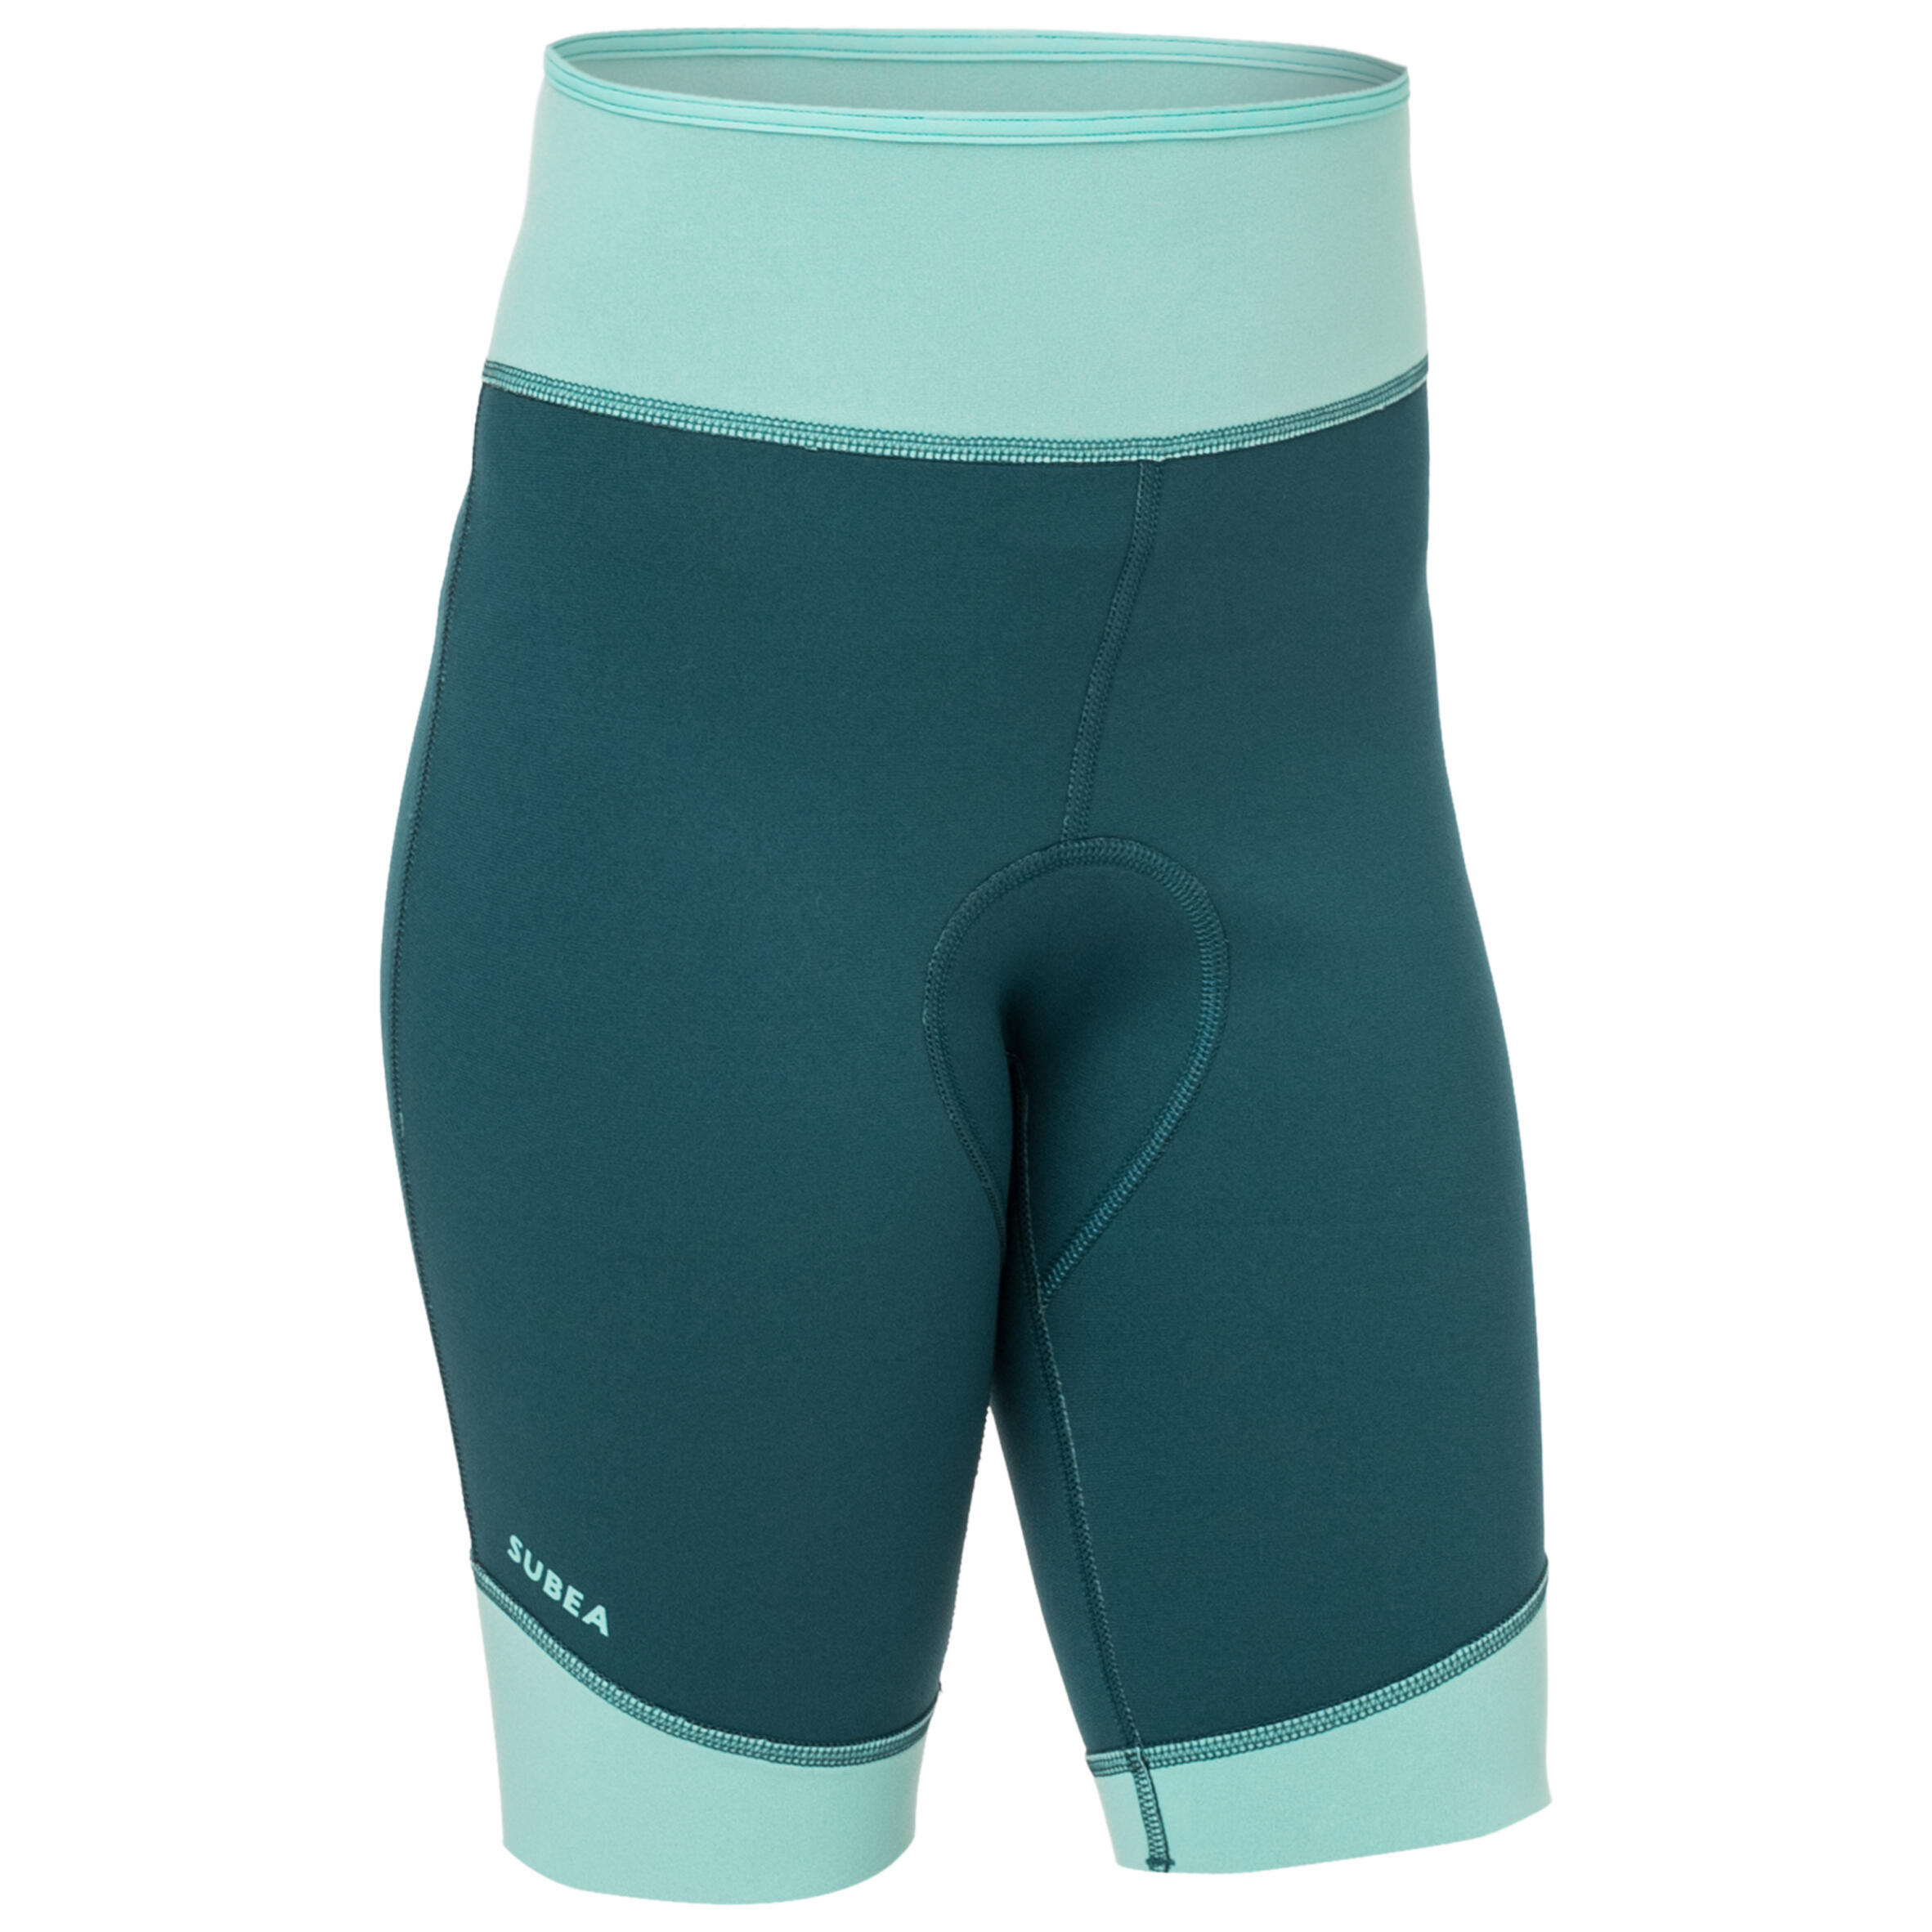 Kids shorts 1.5 mm neoprene blue 1/5